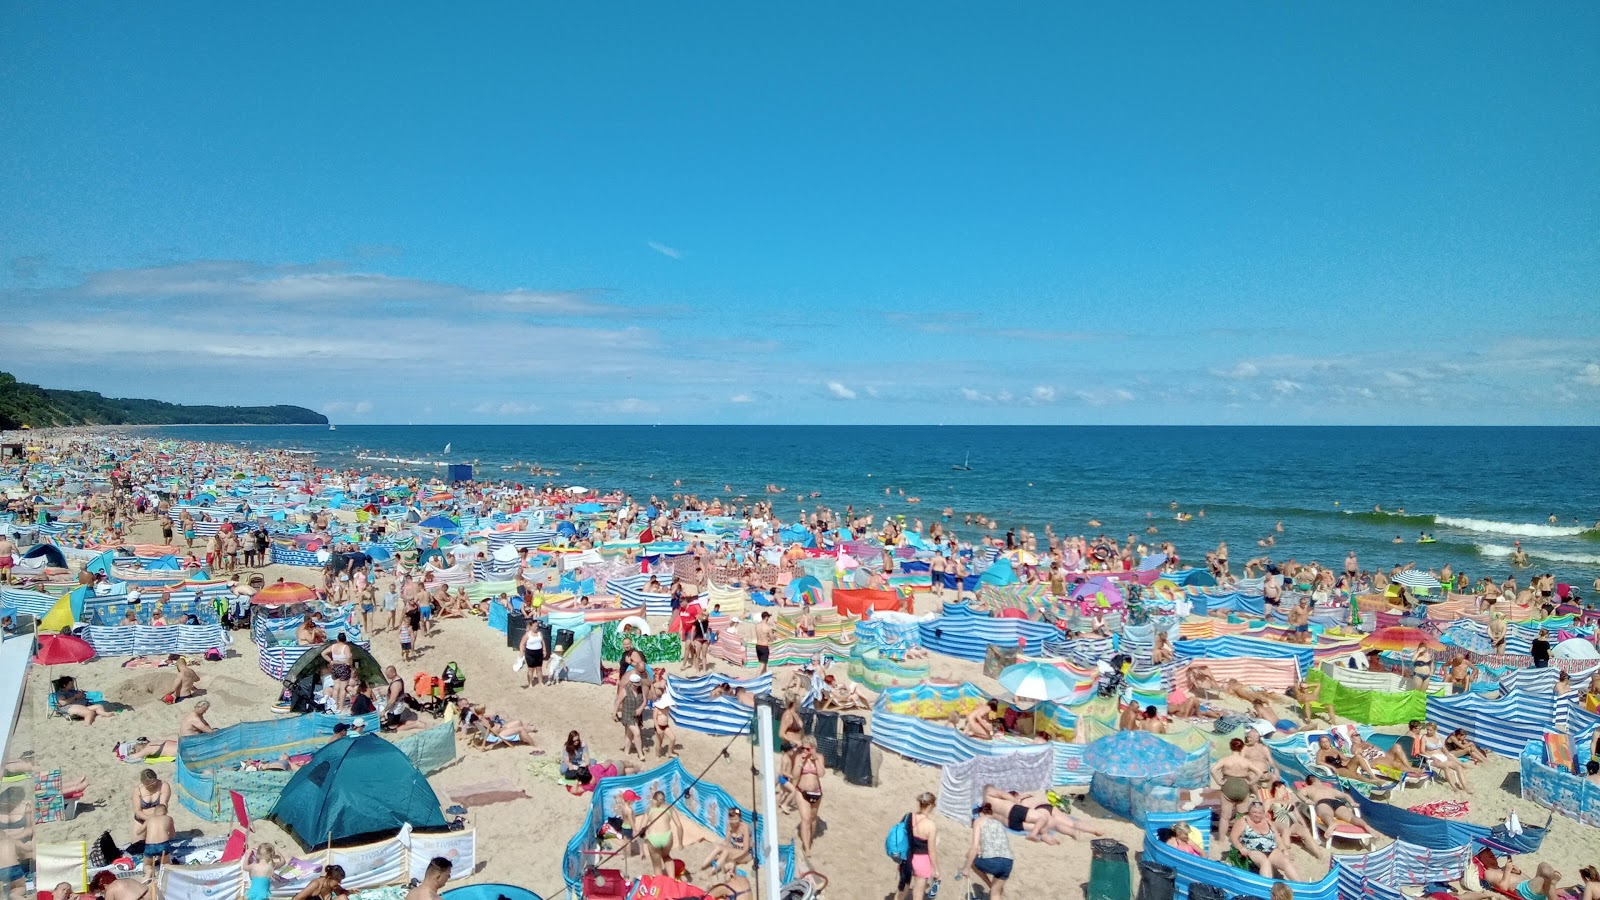 Wladyslawowo Beach'in fotoğrafı - rahatlamayı sevenler arasında popüler bir yer